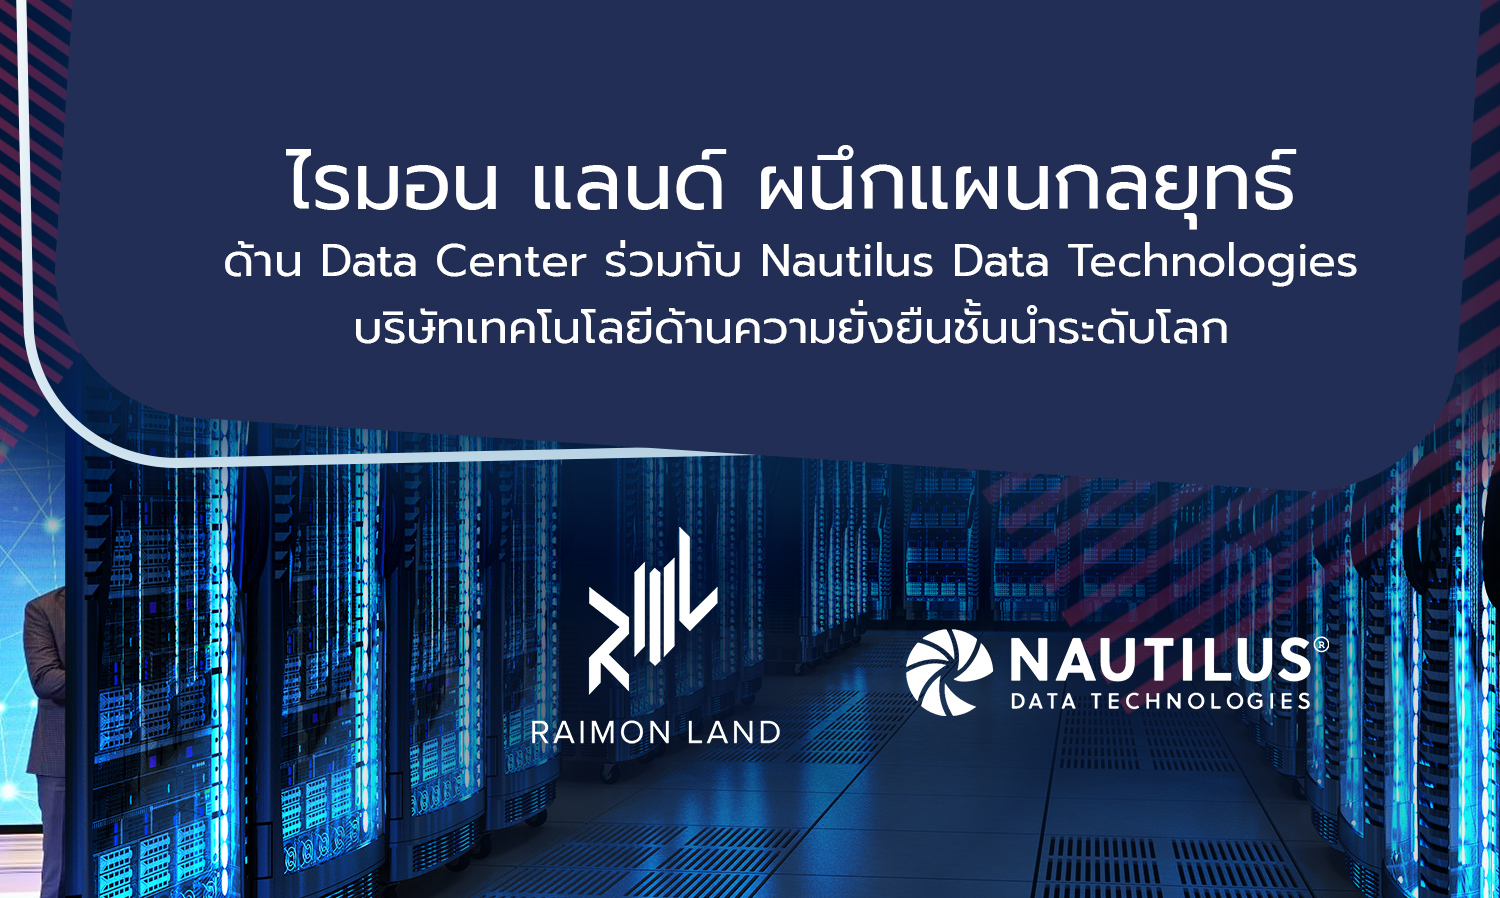 ไรมอน แลนด์ ผนึกแผนกลยุทธ์ด้าน Data Center ร่วมกับ Nautilus Data Technologies บริษัทเทคโนโลยีด้านความยั่งยืนชั้นนำระดับโลก